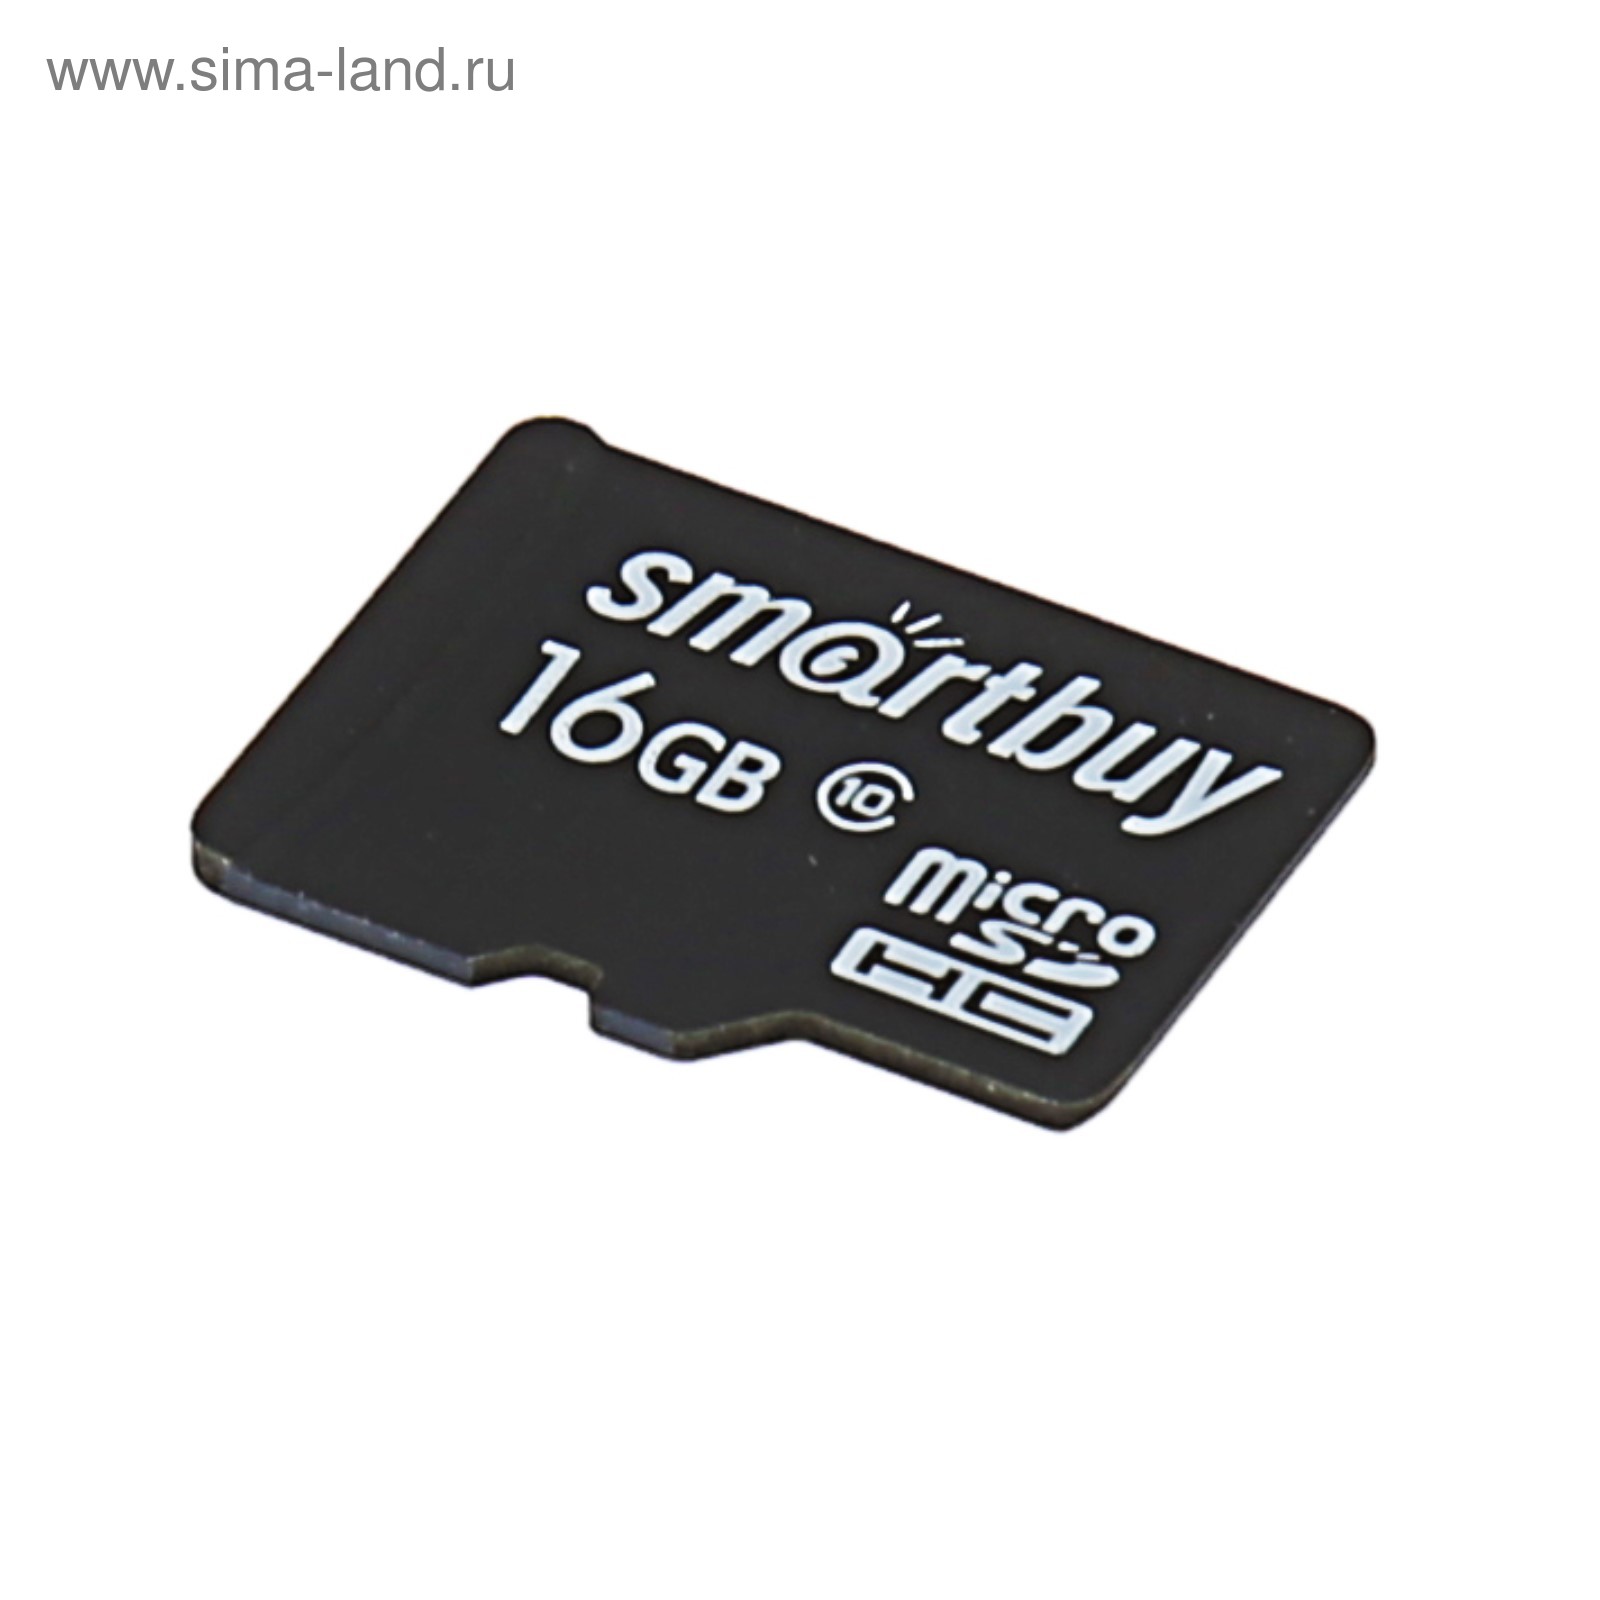 Карта памяти просмотр. Карта памяти SMARTBUY MICROSDHC class 10 16gb. Карта флэш-памяти MICROSD 16 ГБ Smart buy +SD адаптер (class 10) le. Микро СД SMARTBUY 16gb. SMARTBUY флешка 16 микро СД.